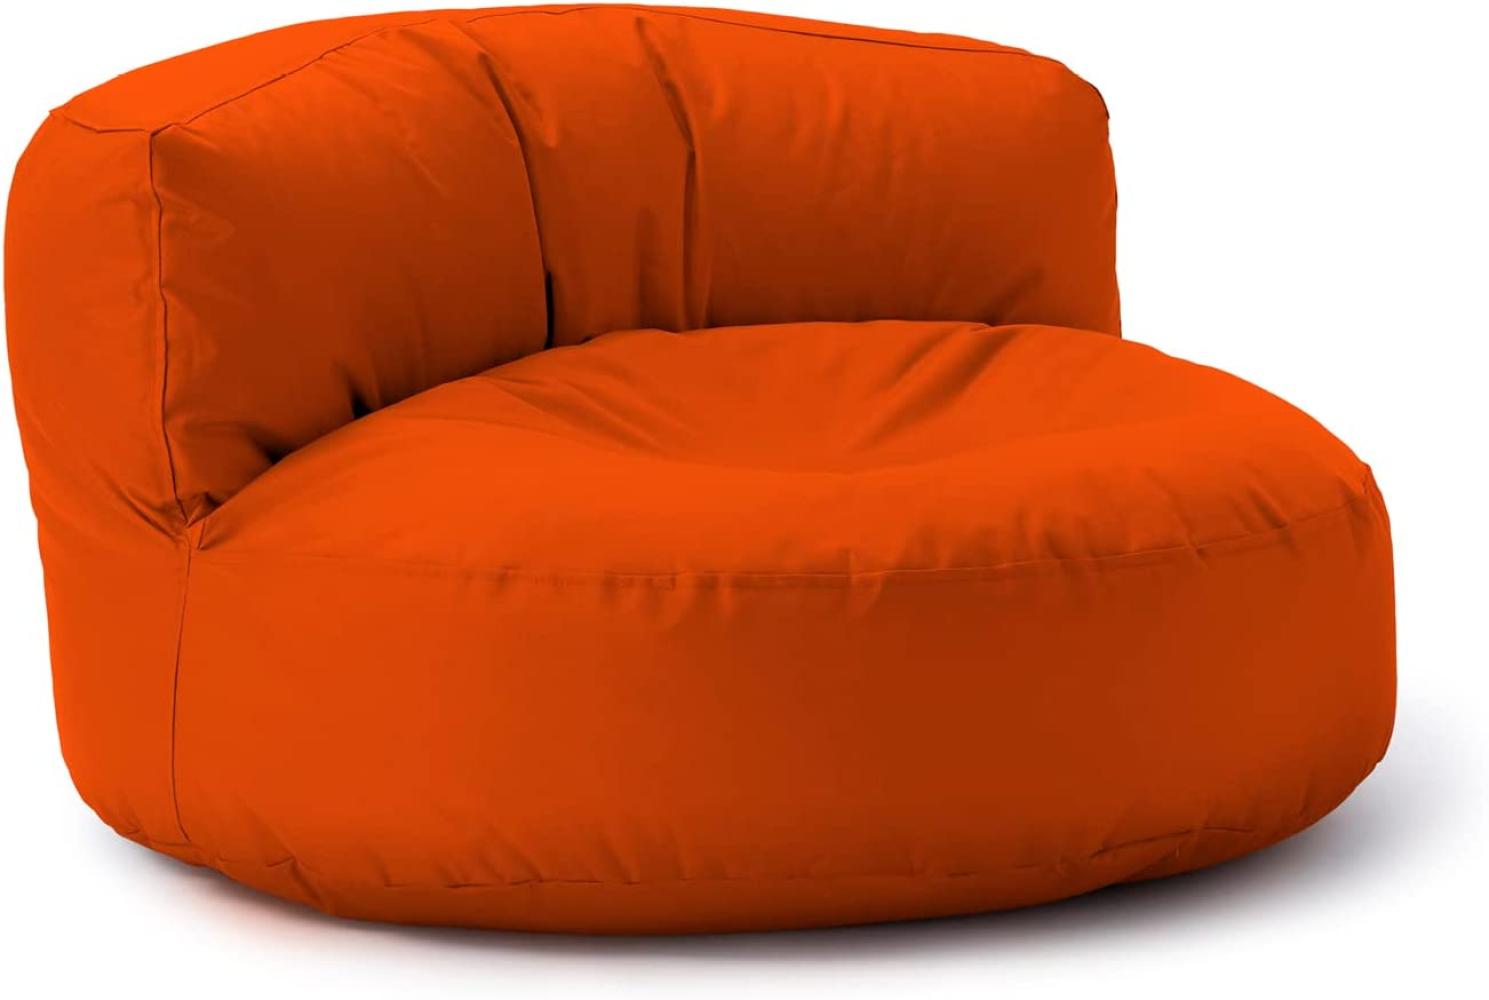 Lumaland Outdoor Sitzsack-Lounge, Rundes Sitzsack-Sofa für draußen, 320l Füllung, 90 x 50 cm, Orange Bild 1